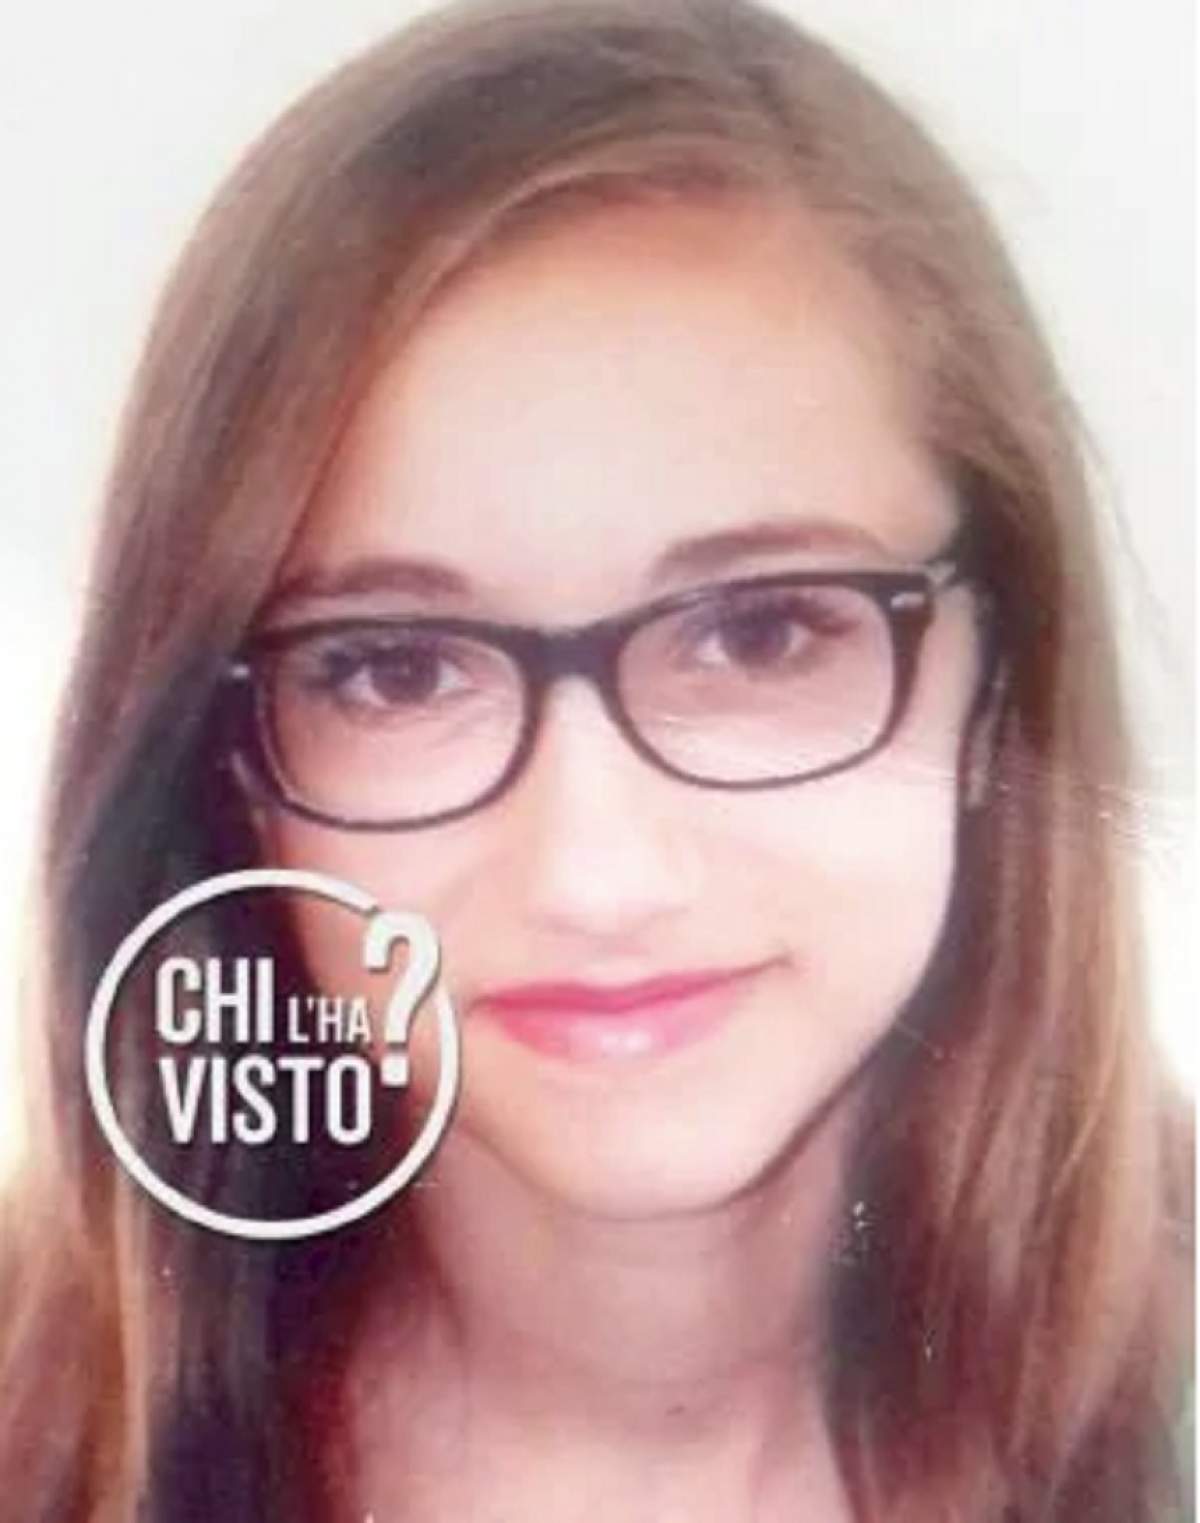 O româncă de 16 ani a dispărut în Italia. Părinţii sunt disperaţi